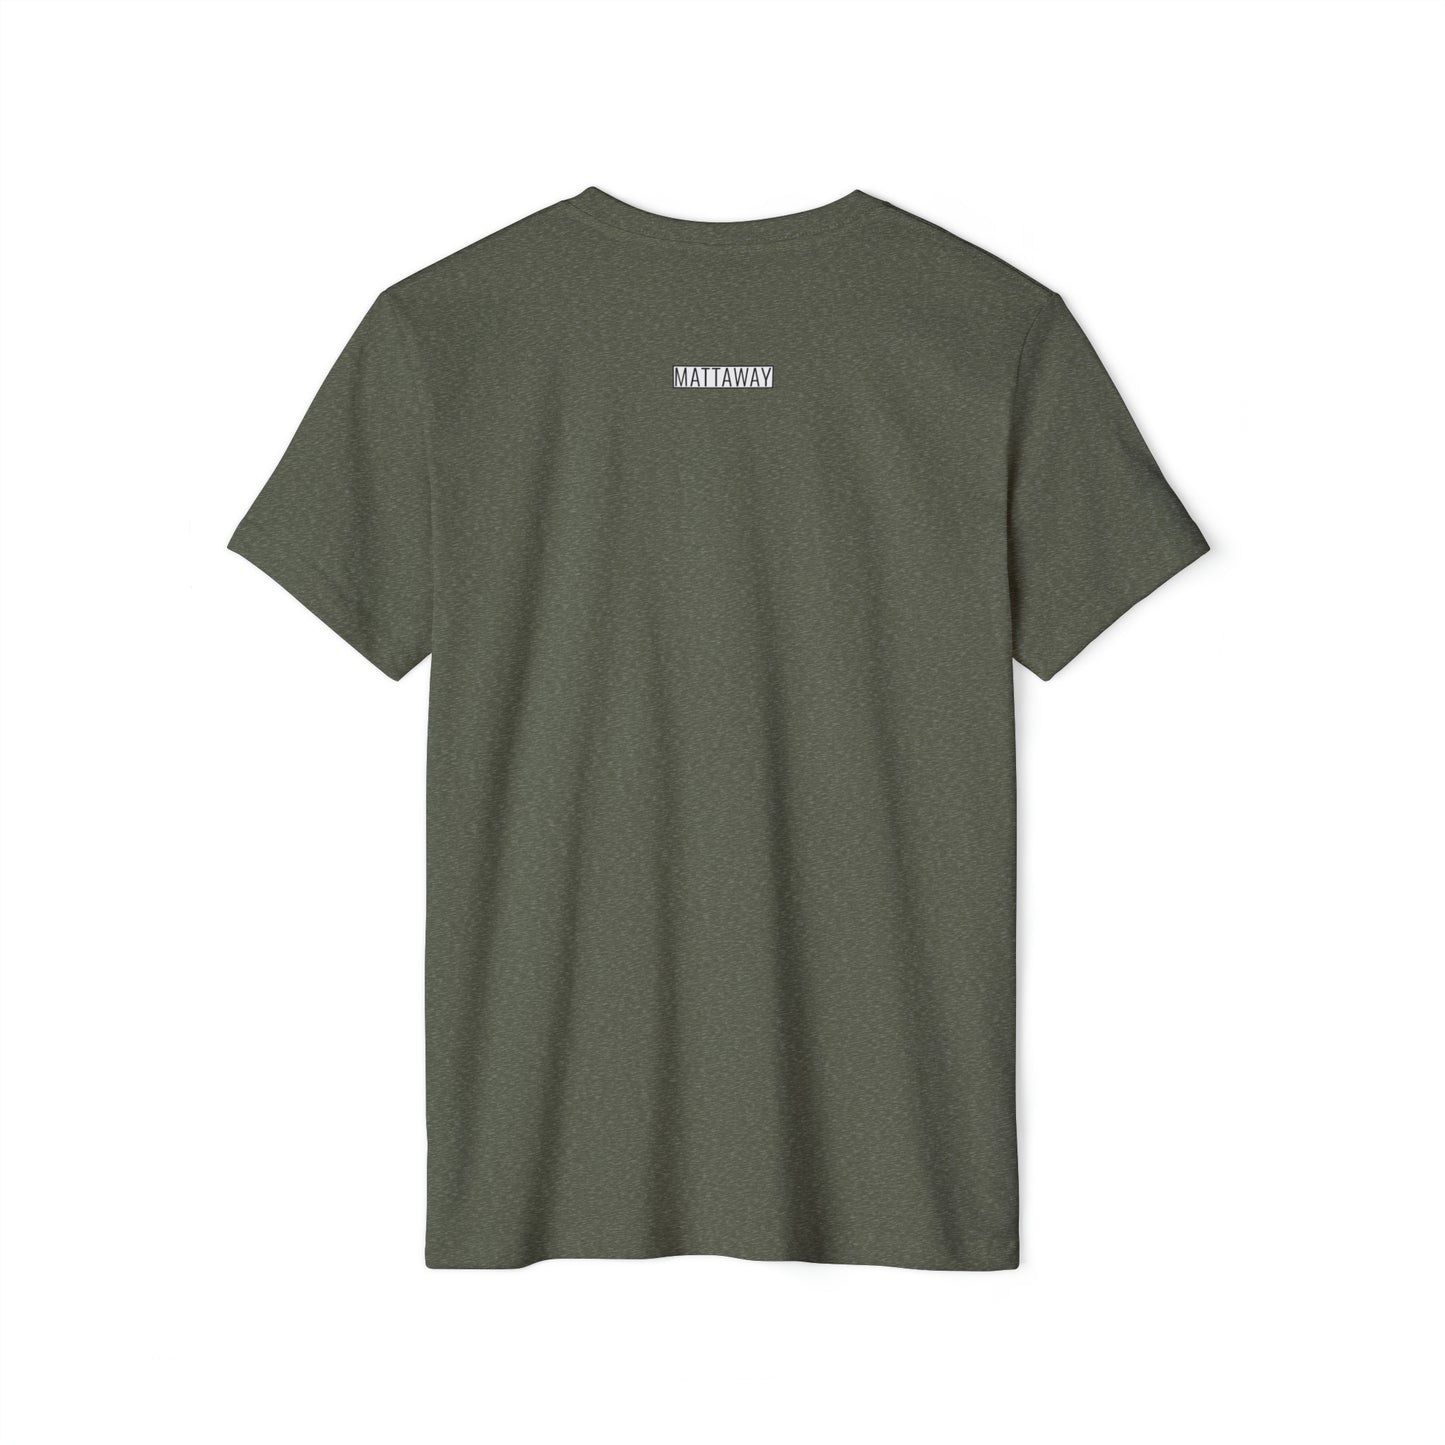 MINIMAL SHAPES 102 - Unisex Recycled Organic T-Shirt